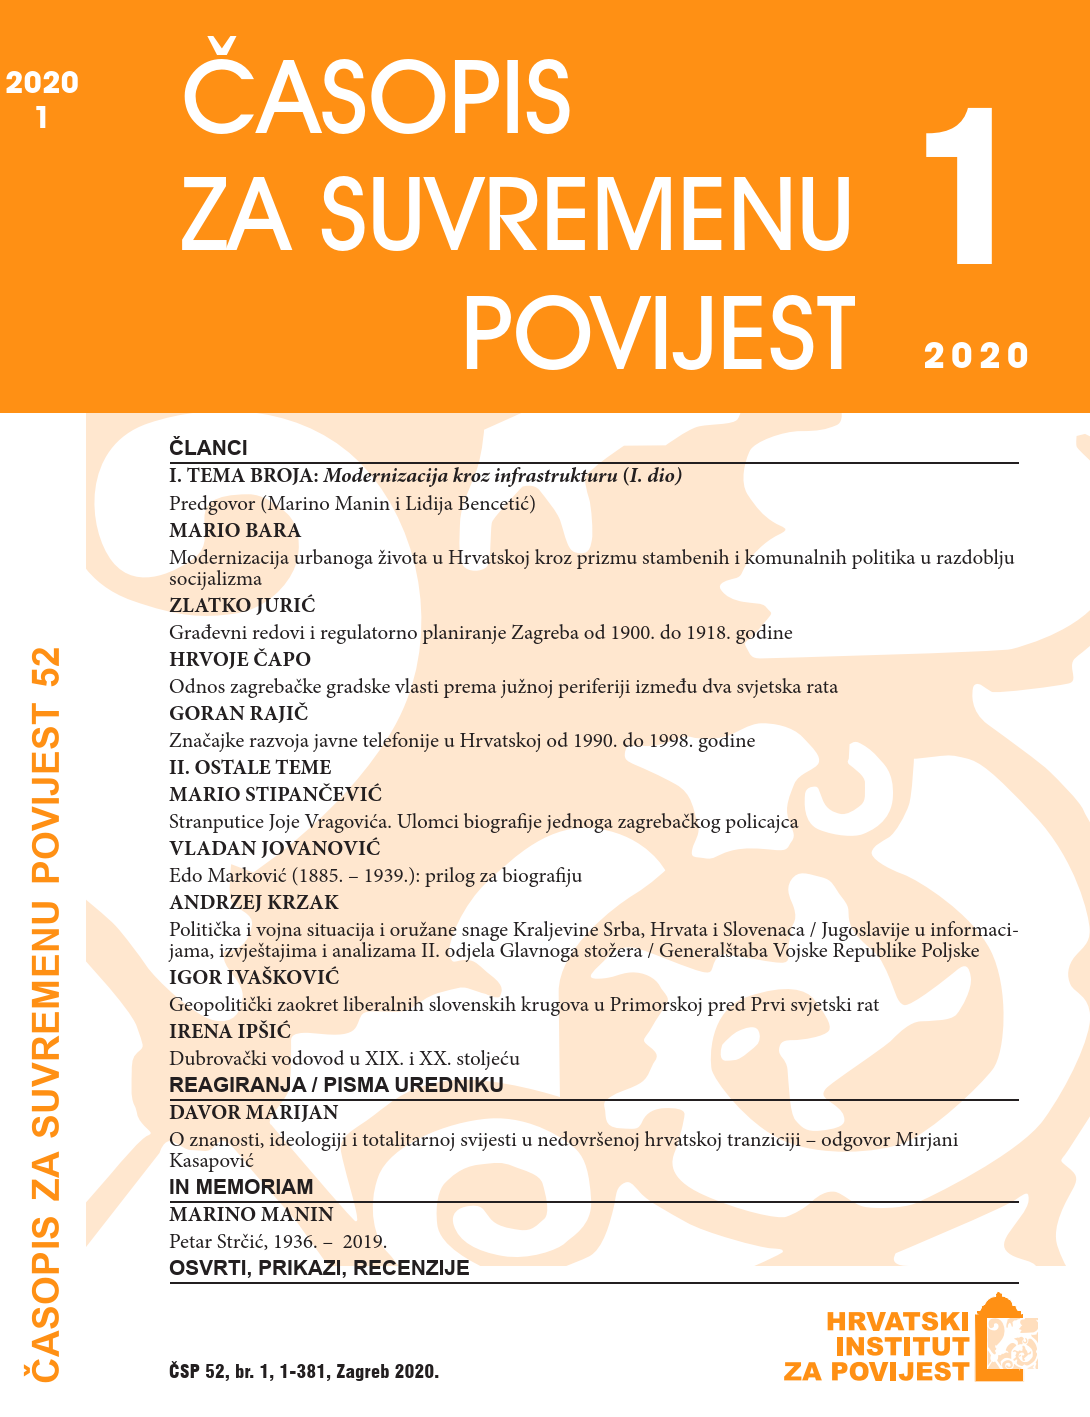 Građevni redovi i regulatorno planiranje Zagreba od 1900. do 1918. godine